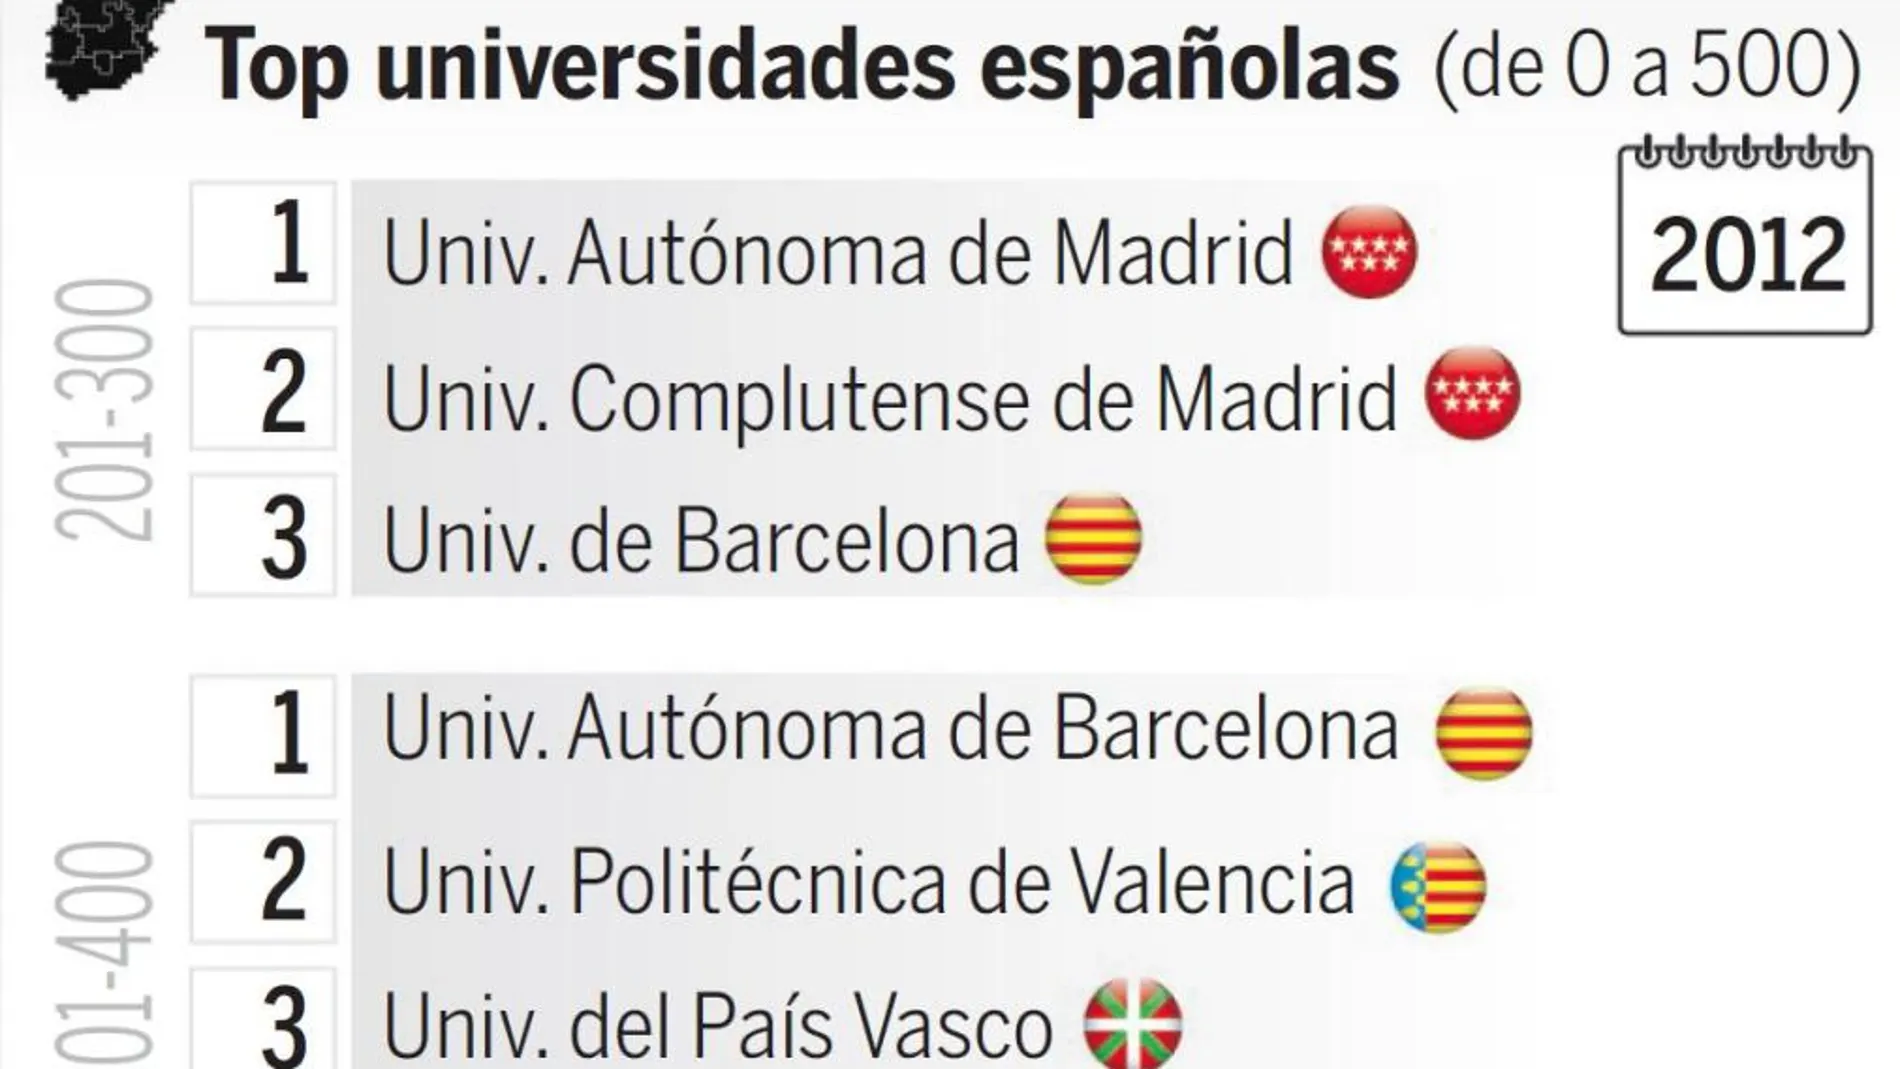 Las universidades españolas siguen fuera del «top 200»